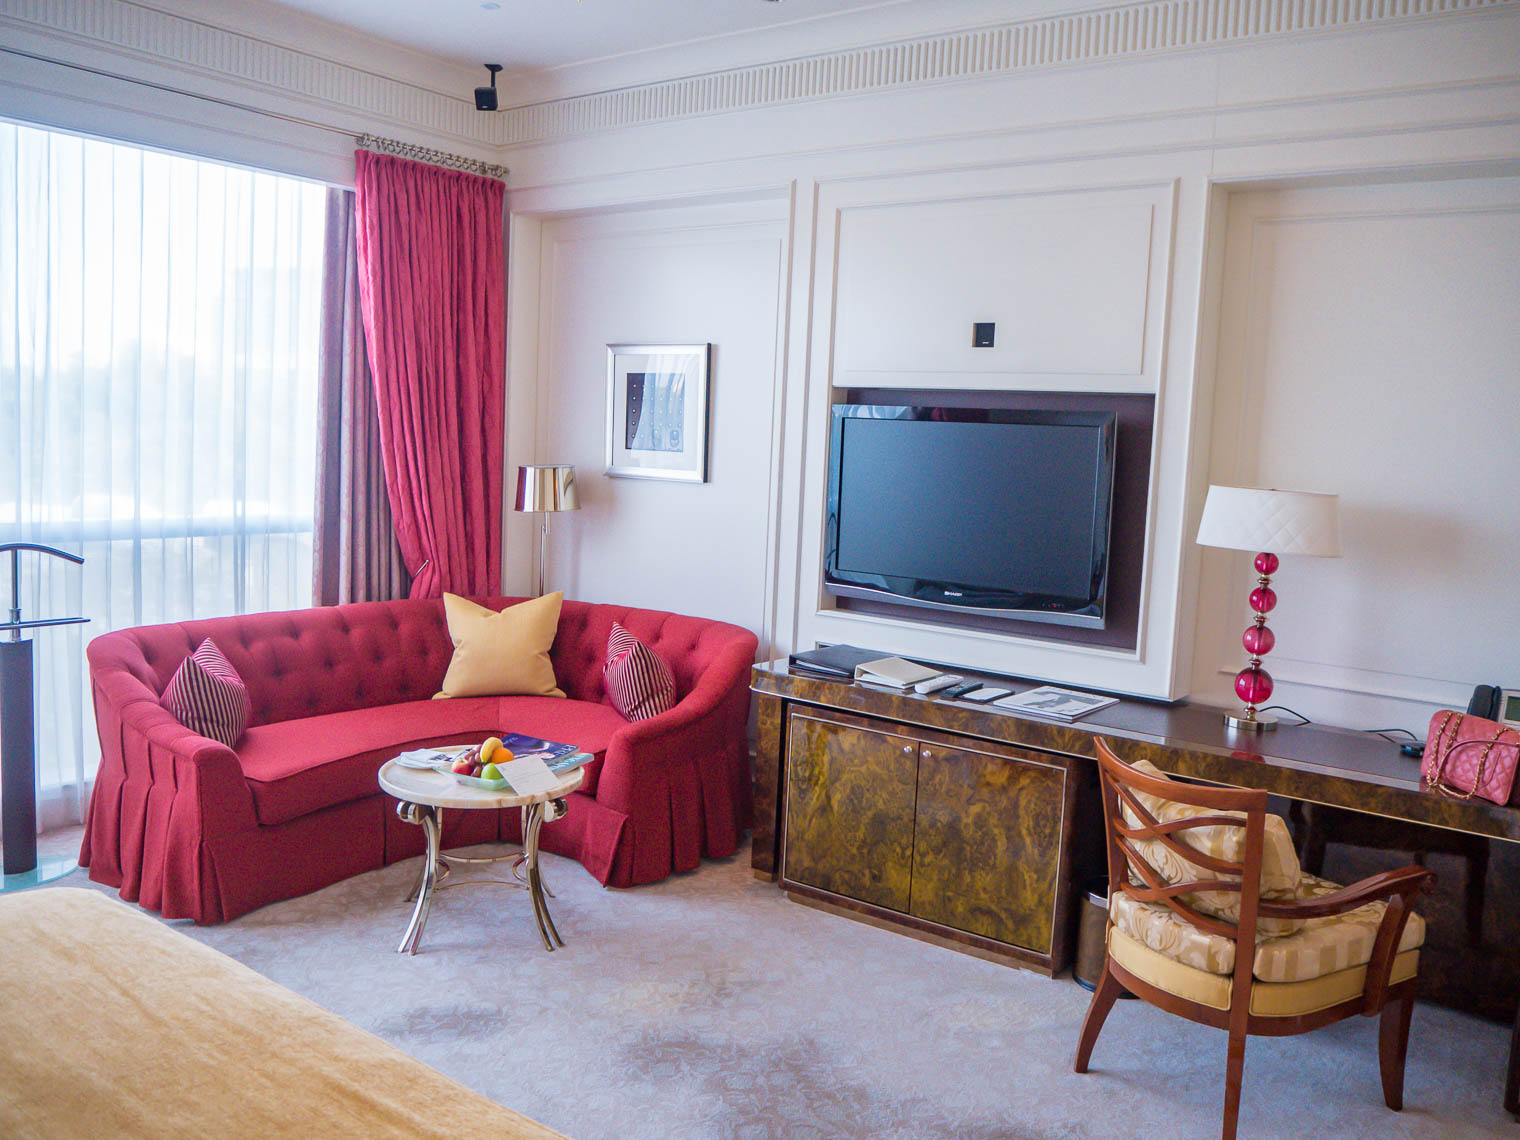 Hotel room at St Regis Singapore